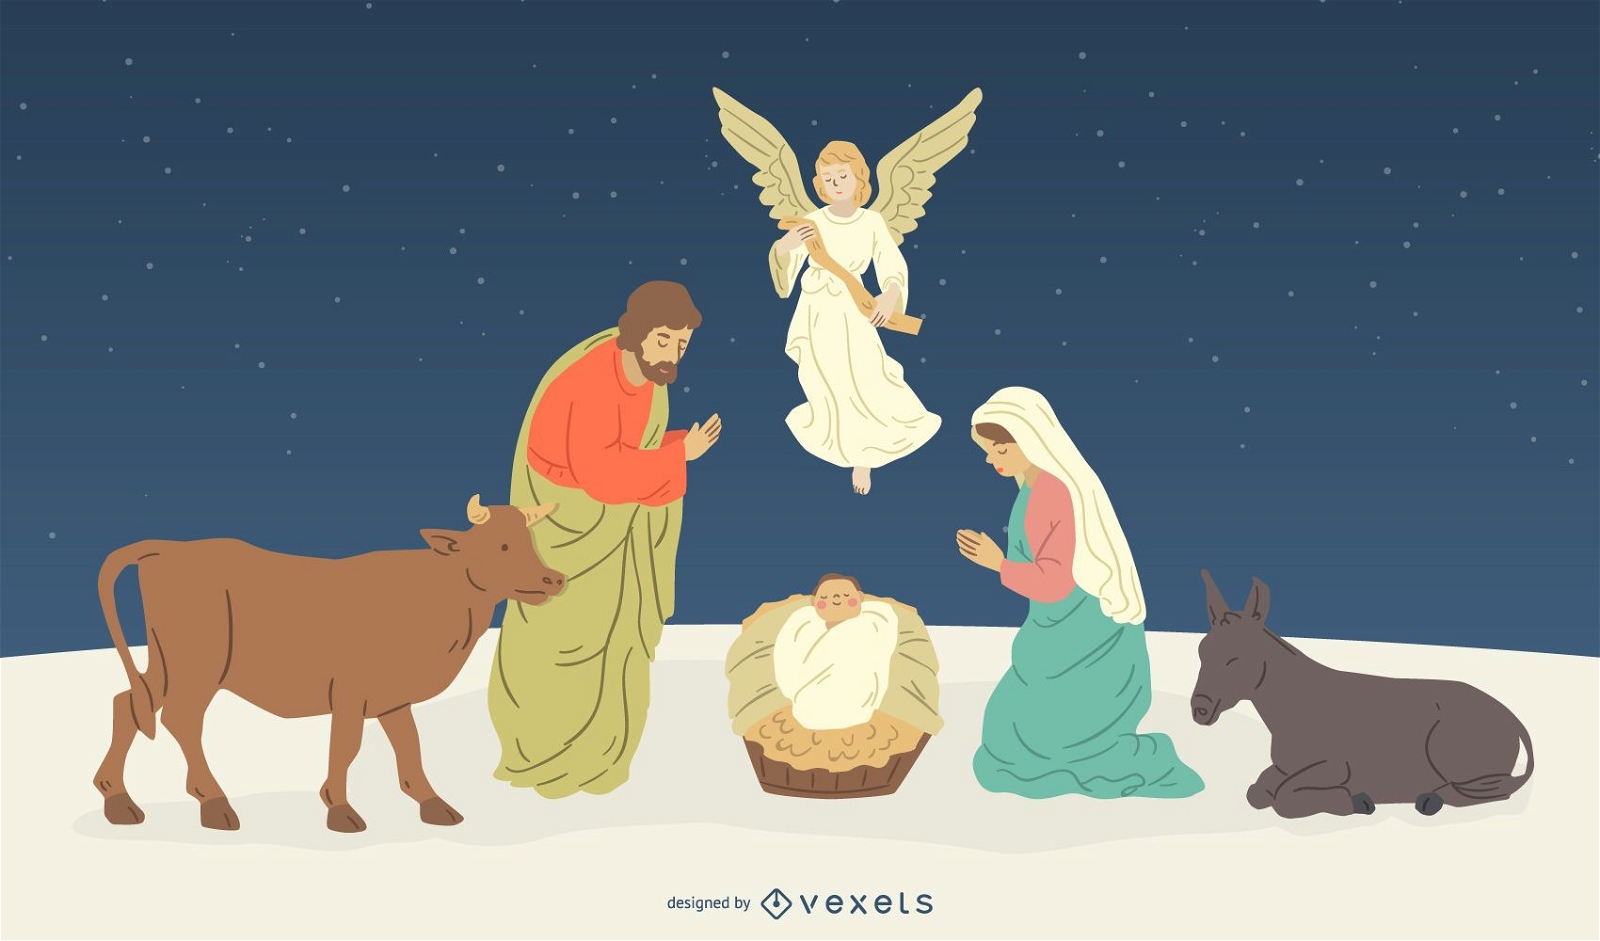 Ilustra??o do nascimento de Jesus com personagens da Natividade